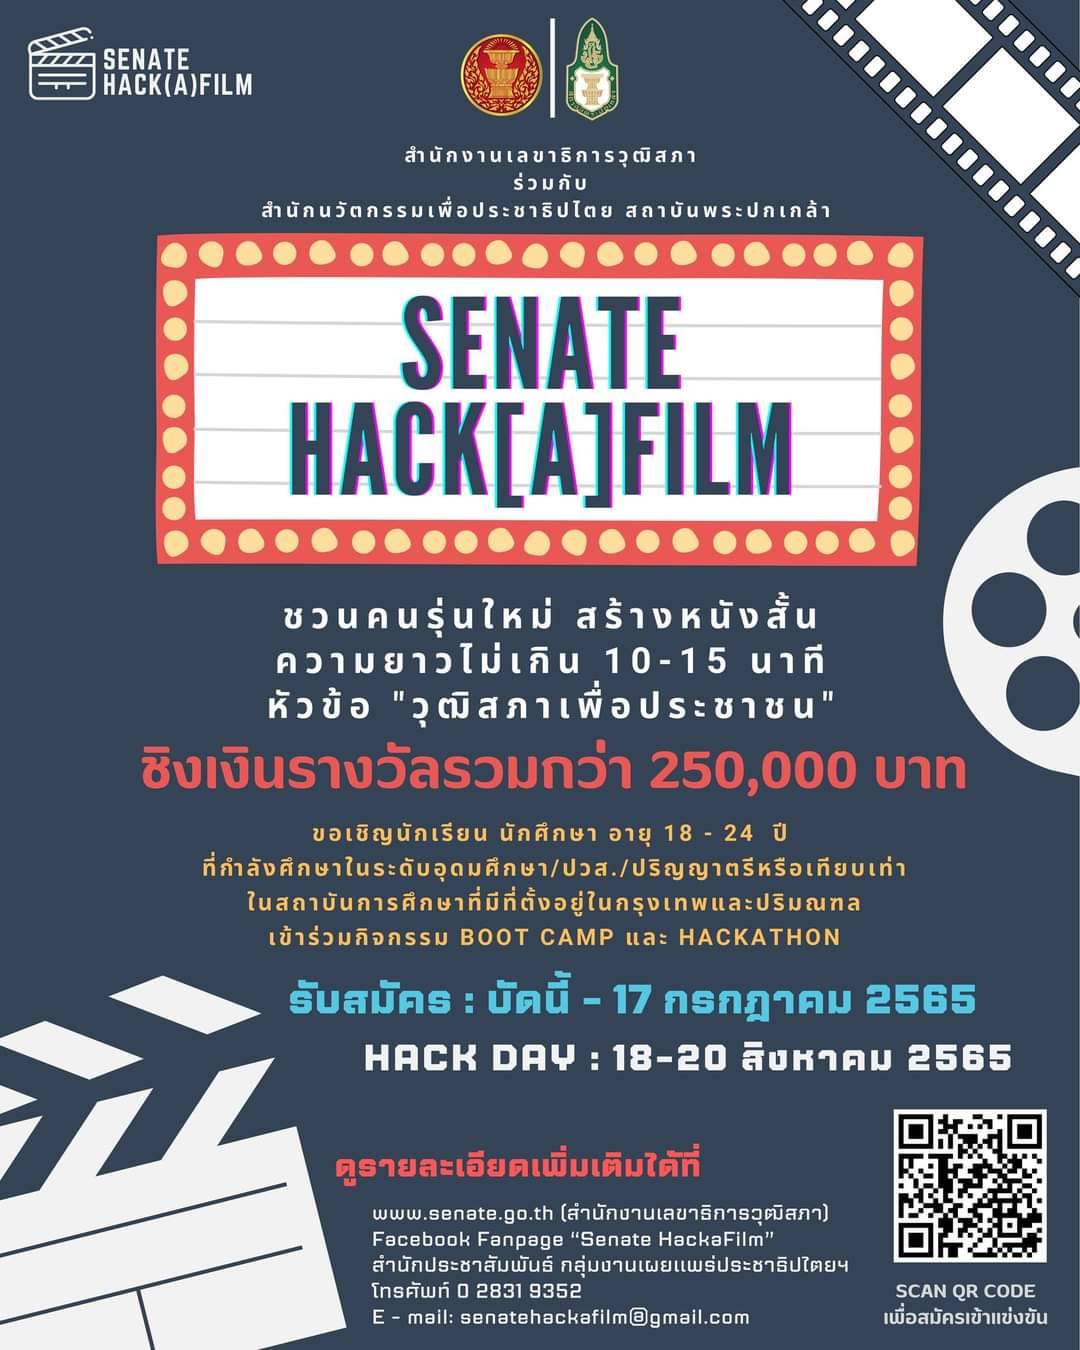 สำนักงานเลขาธิการวุฒิสภา ร่วมกับ สถาบันพระปกเกล้า ชวนนิสิต/นักศึกษา อายุ 18-24 ปี สร้างหนังสั้น ประกวดในโครงการ “Senate Hack[A]film”